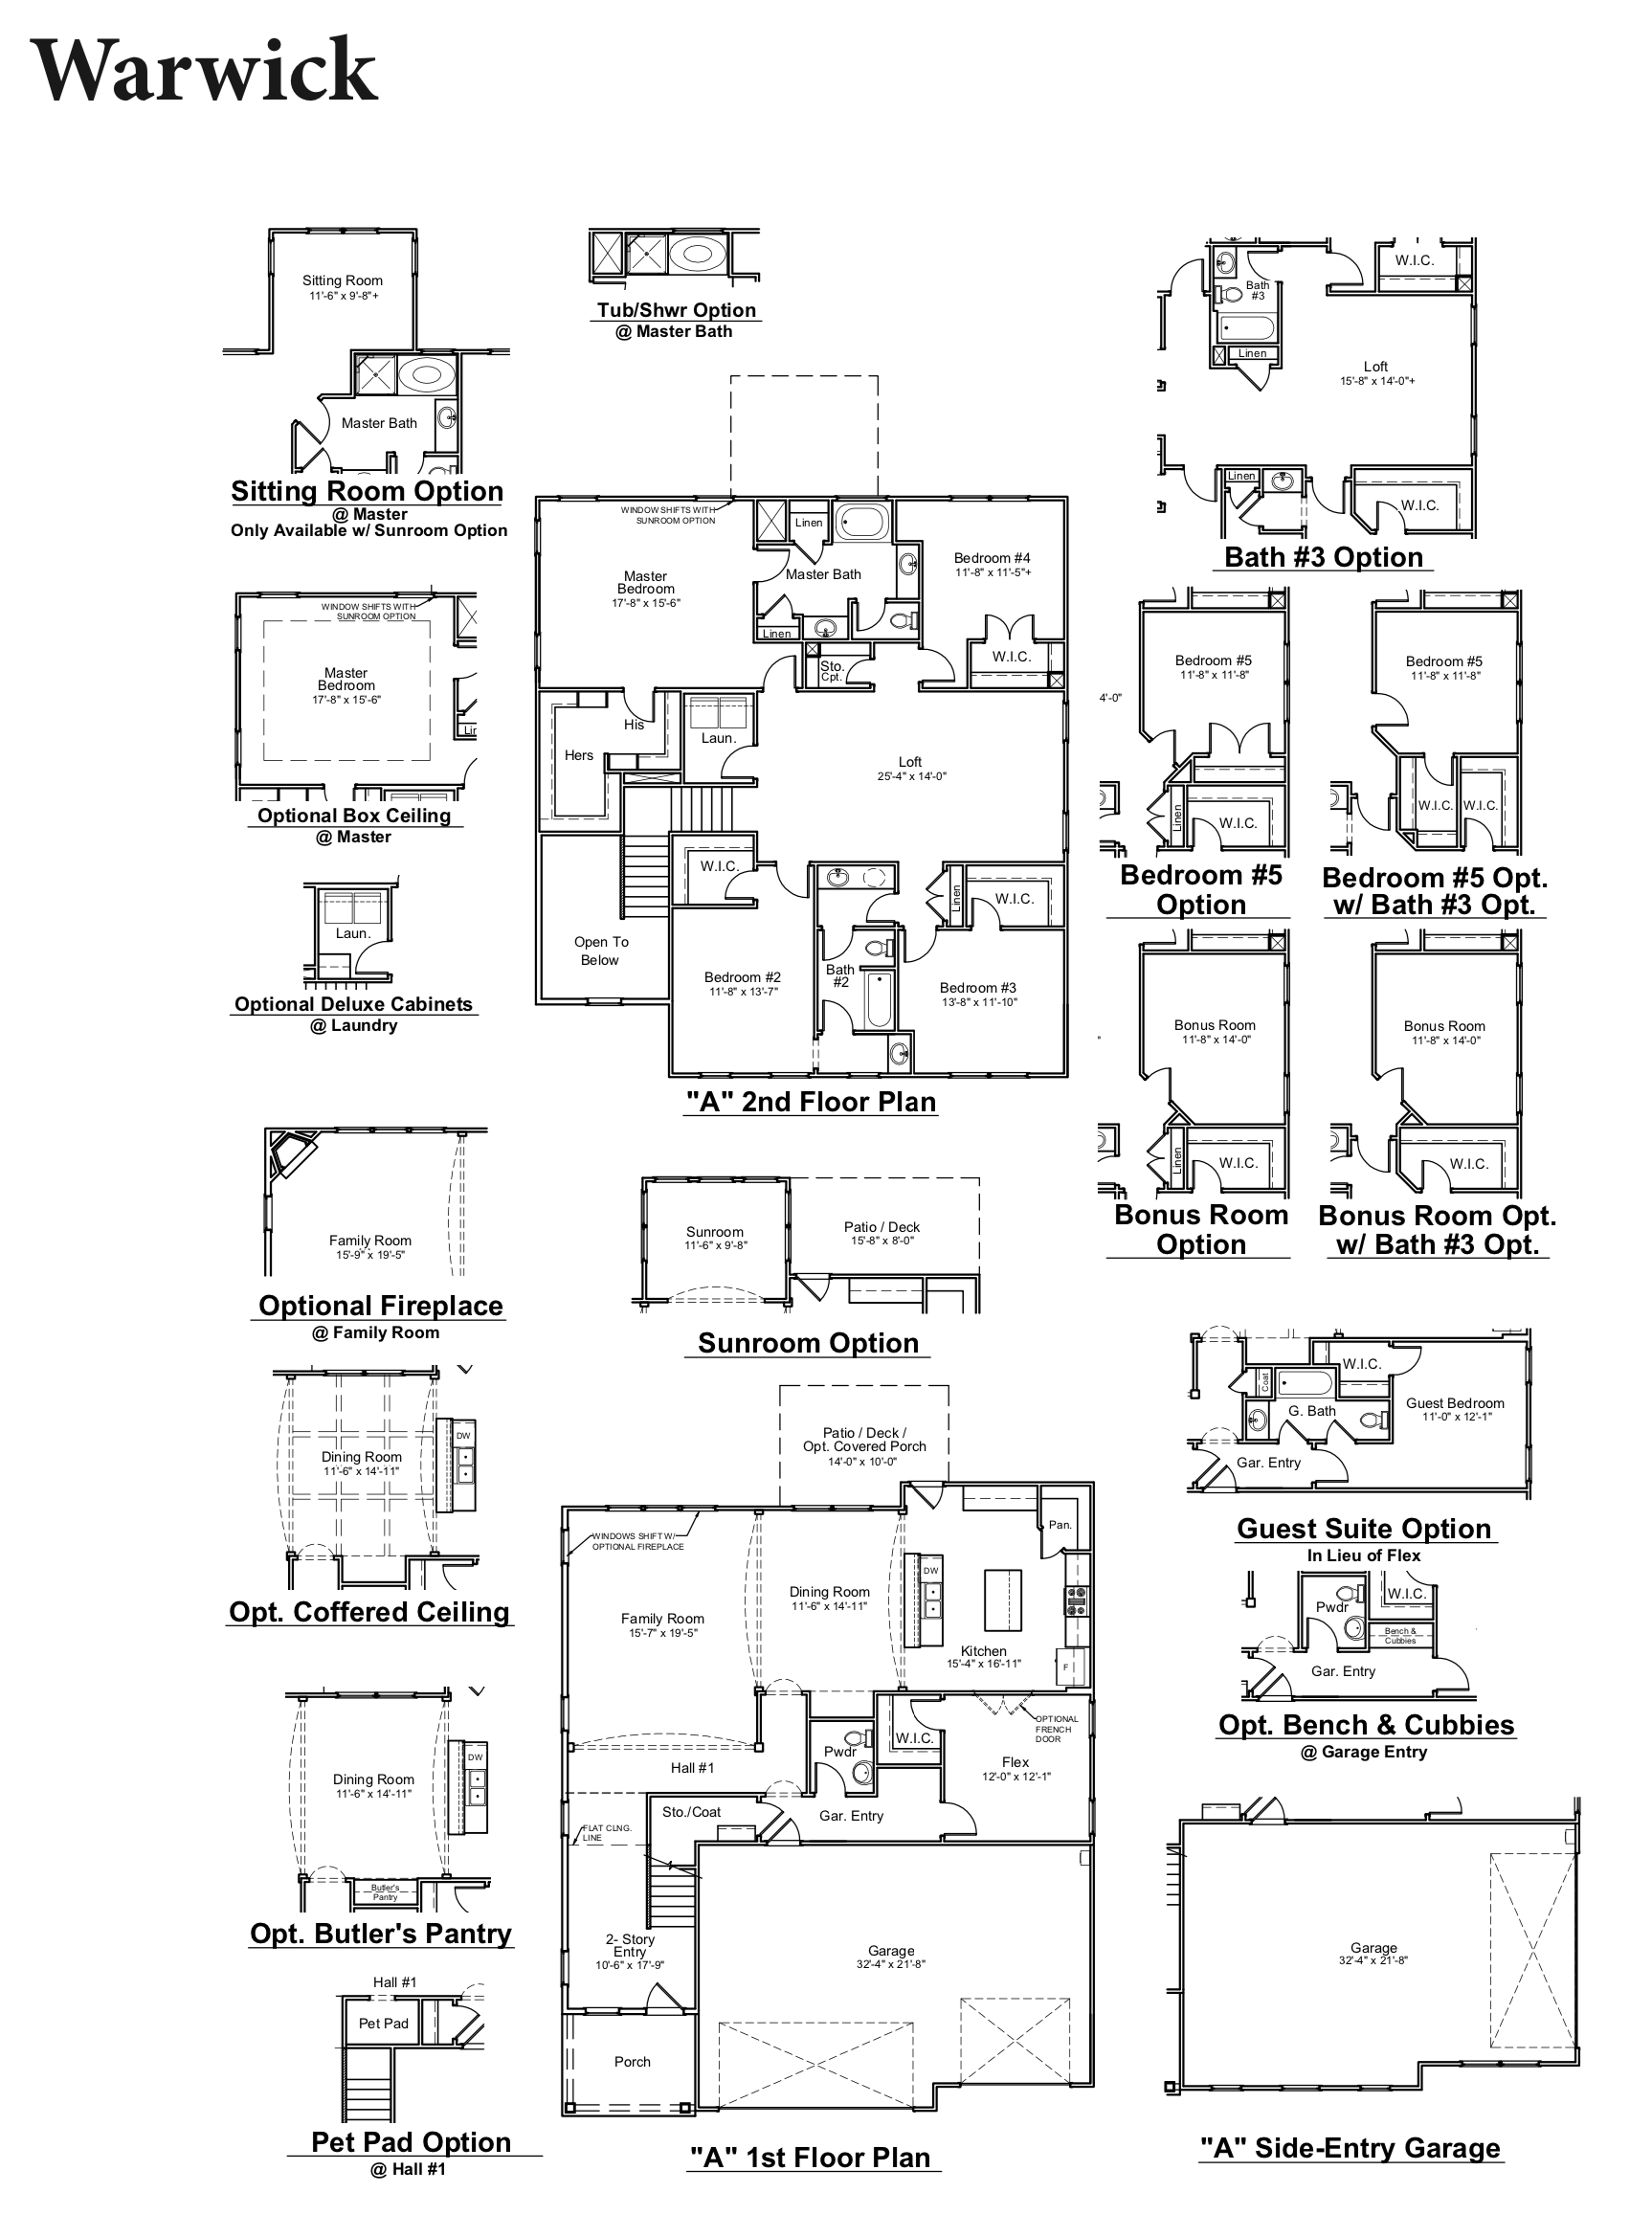 Warwick floor plan image